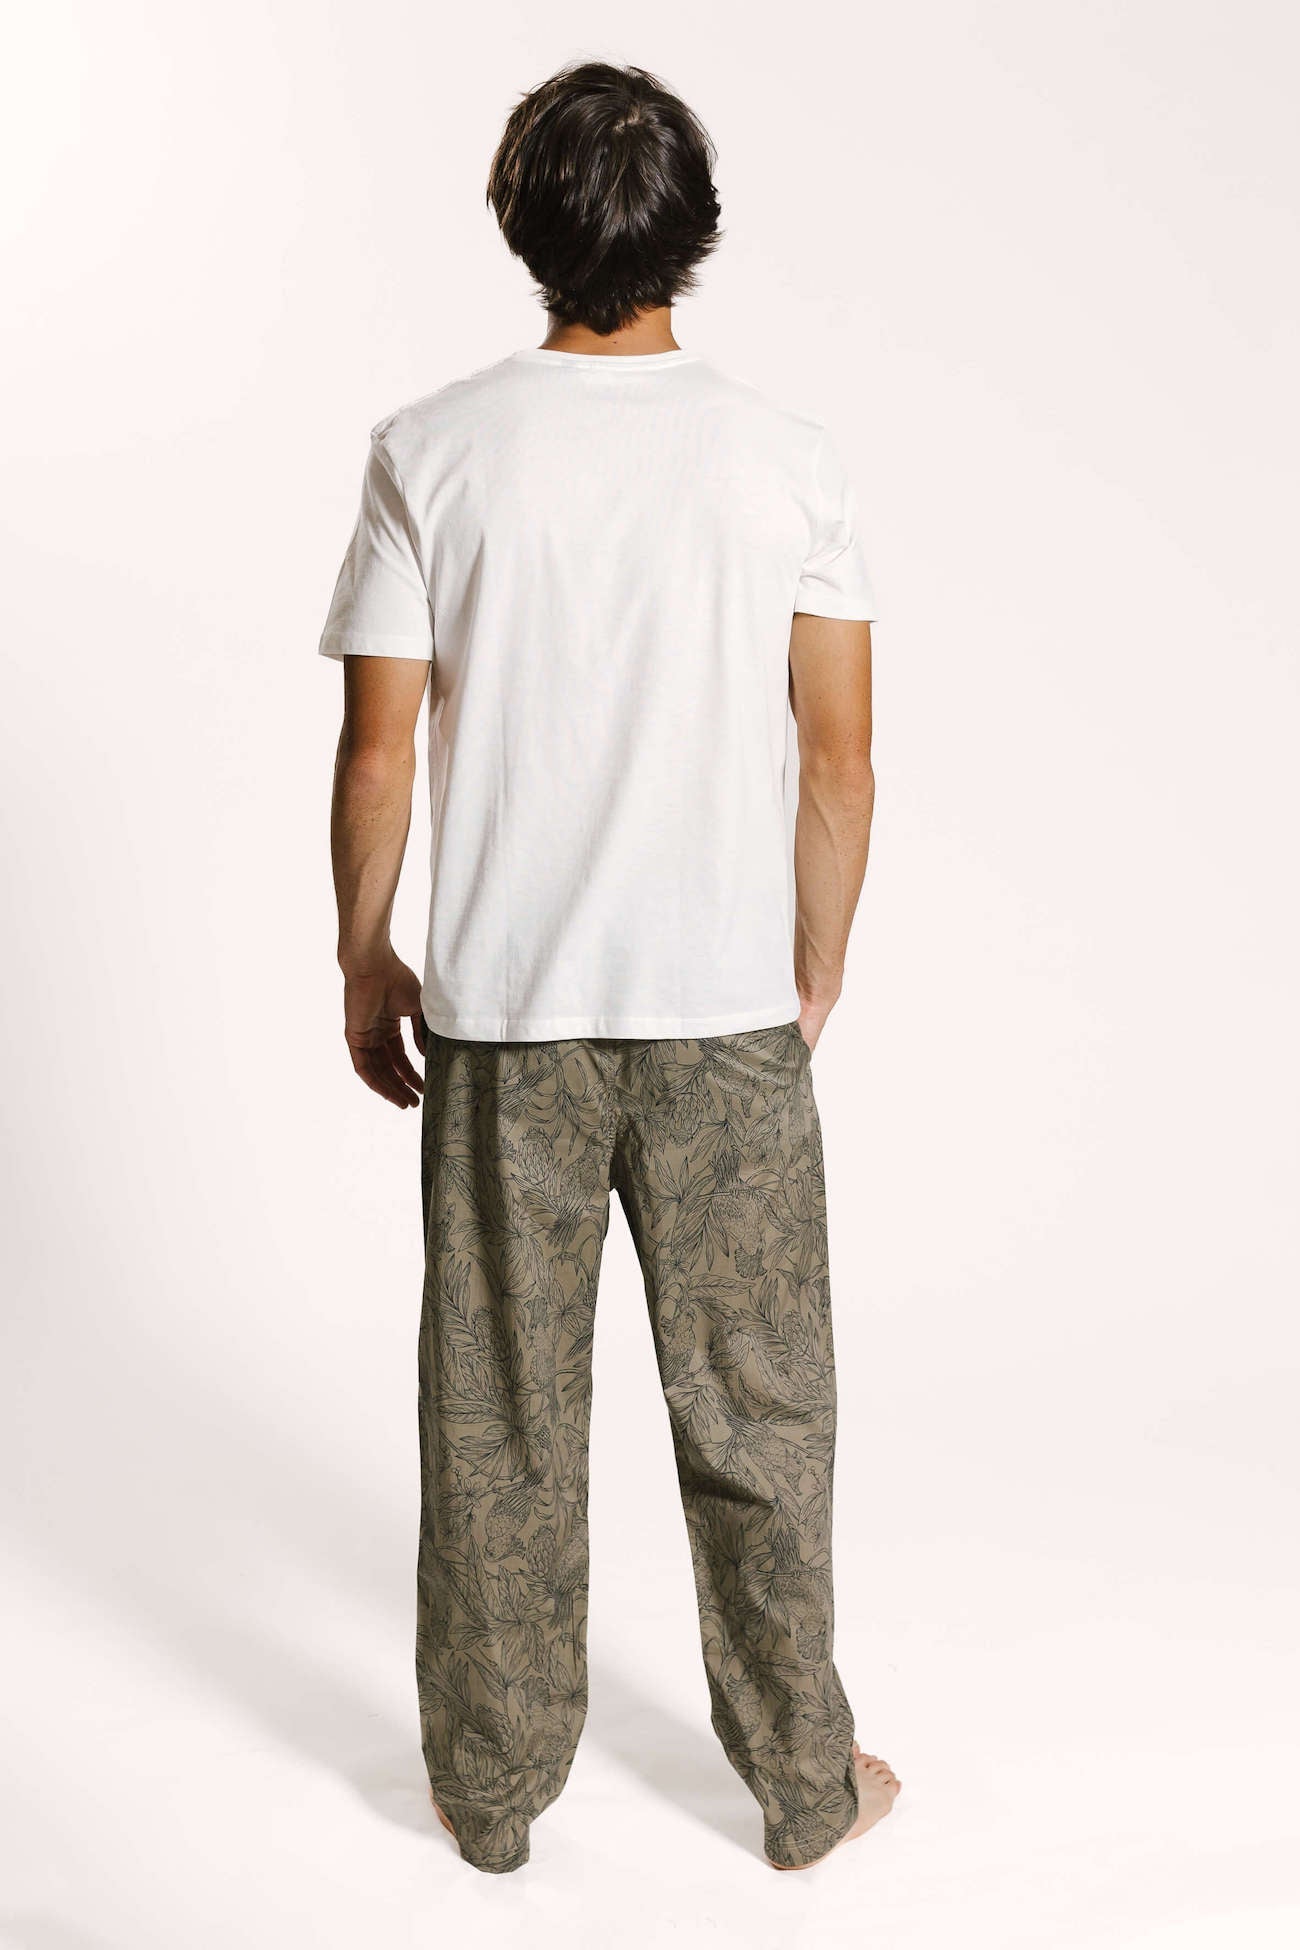 Back of model wearing printed line print sleepwear trousers